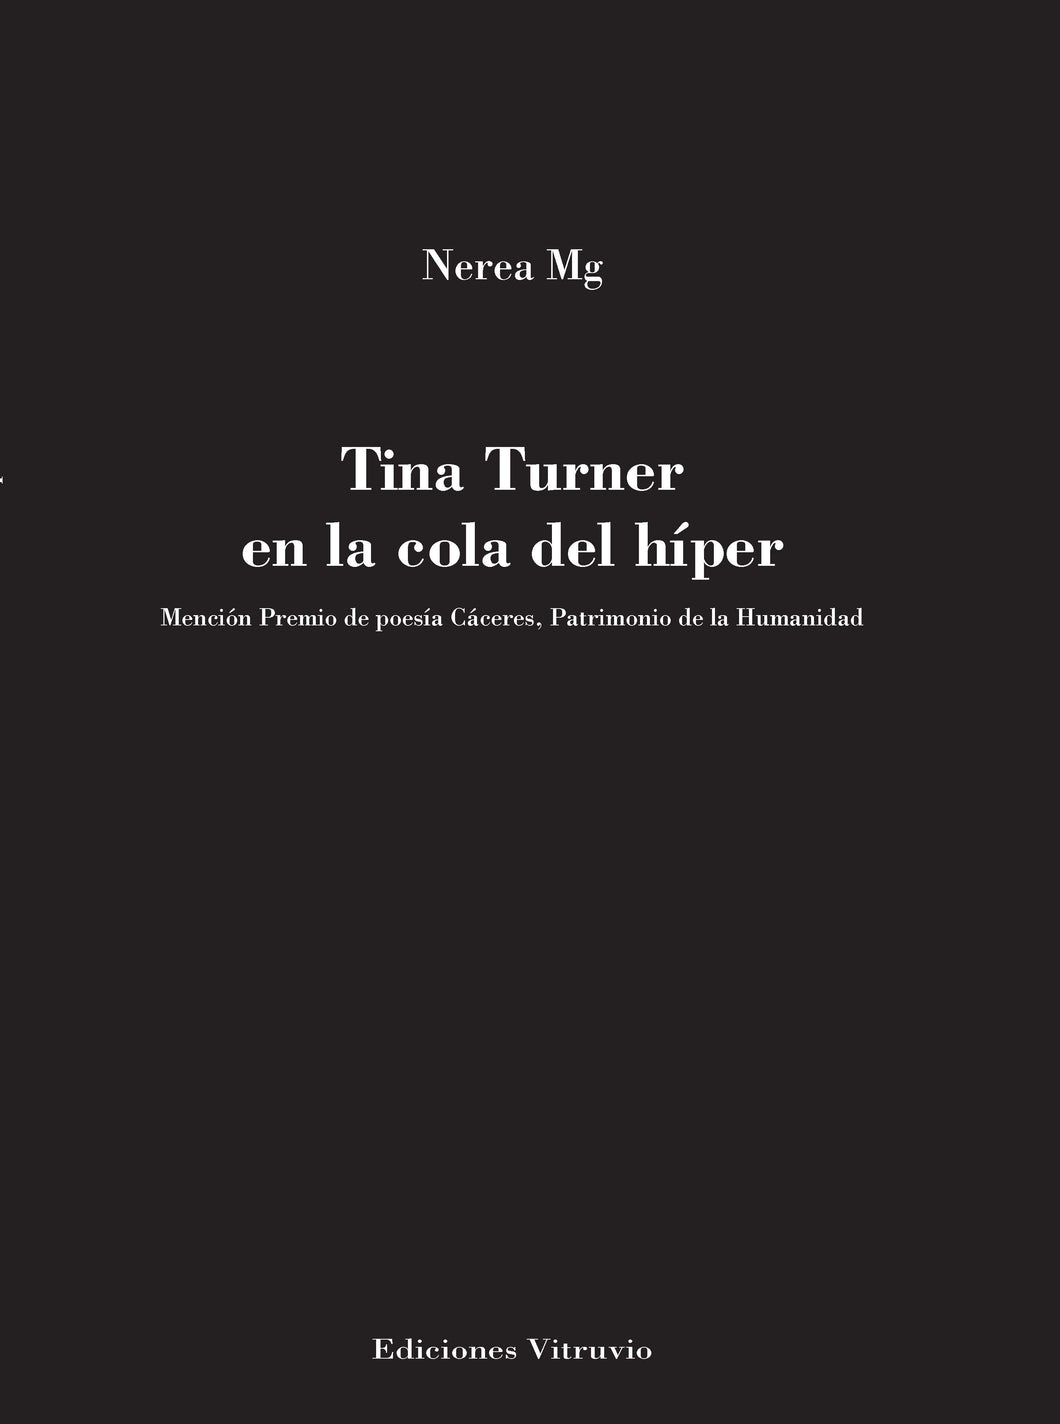 Tina Turner en la cola del híper, de Nerea Mg